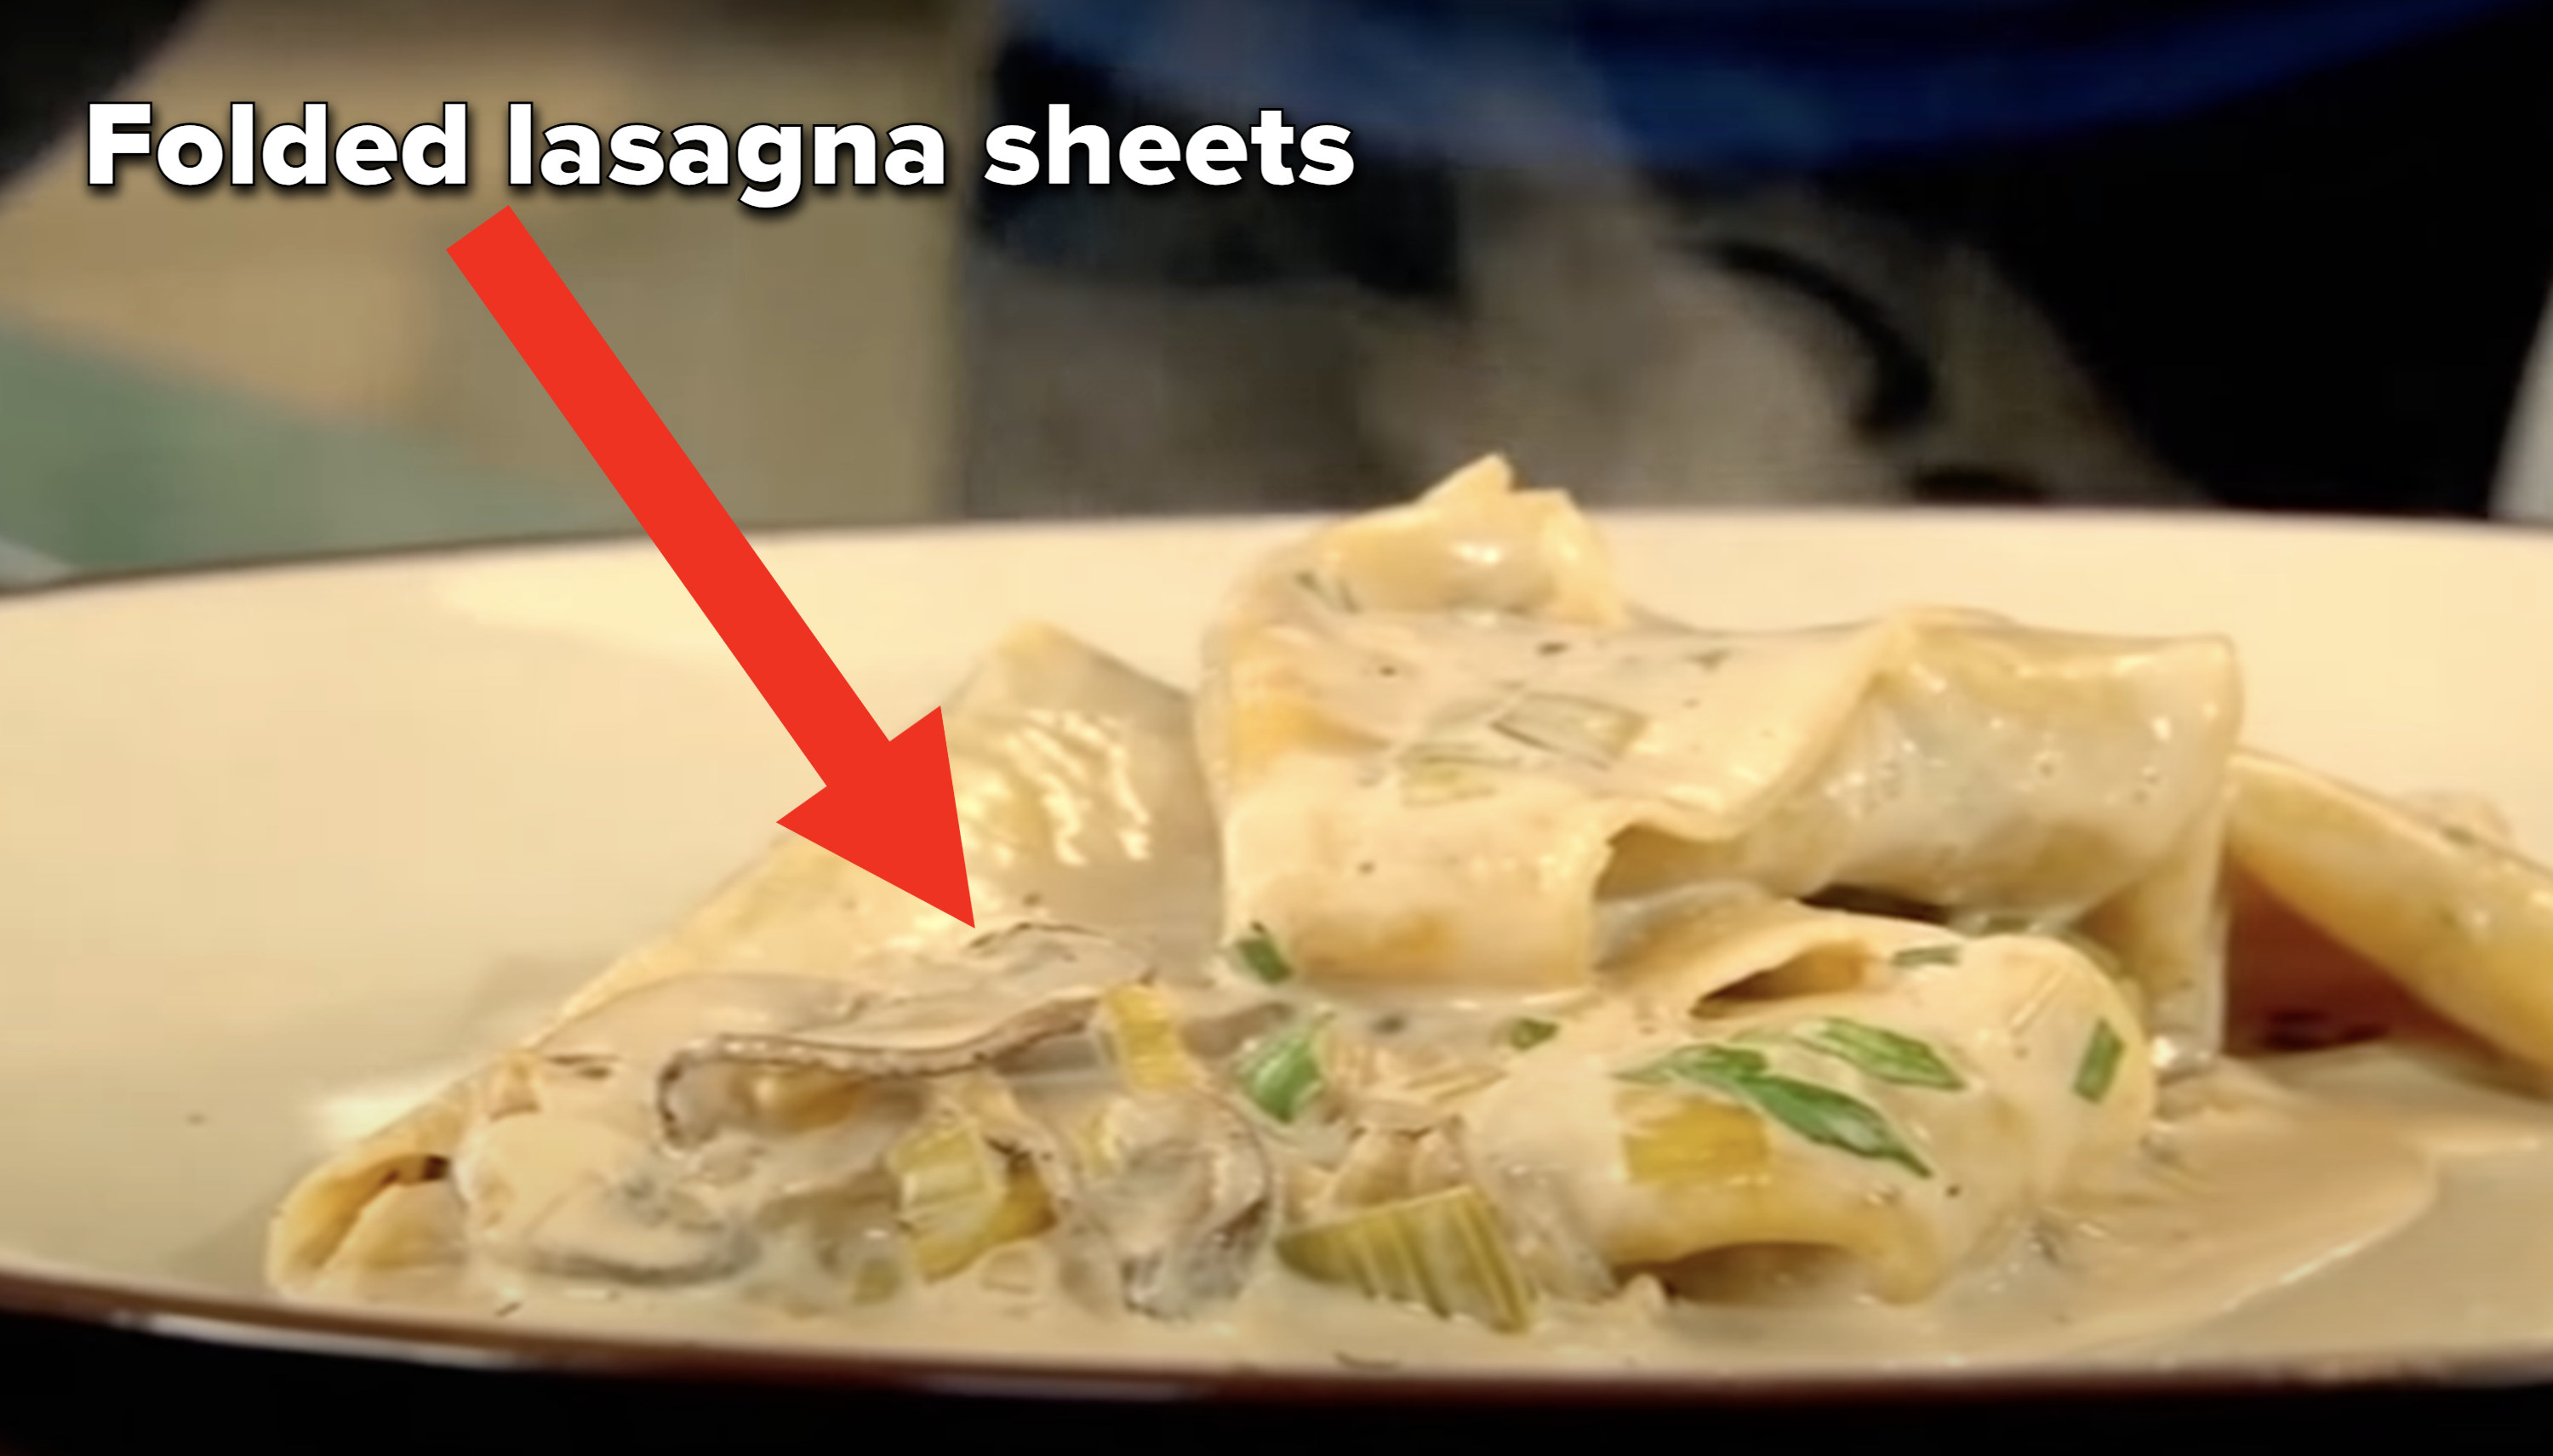 Lasagna noodles in a cream sauce